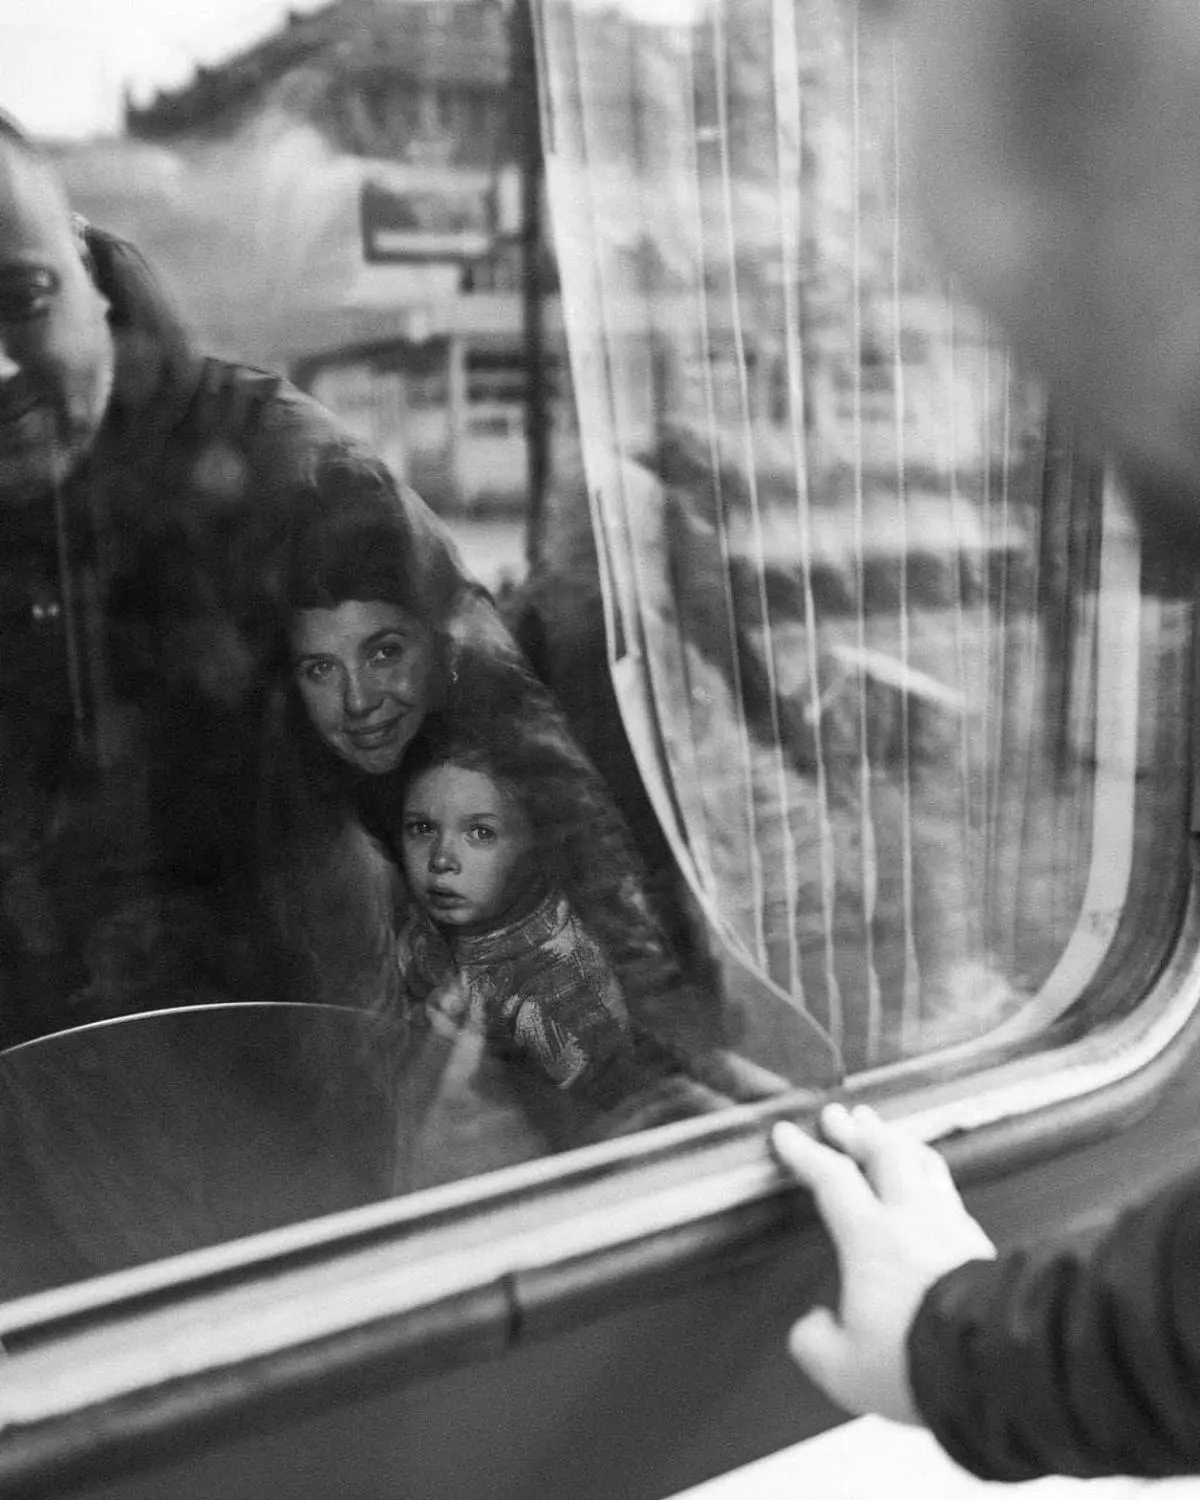 تصاویری تلخ از خداحافظی با زنان و کودکانی که شهر را ترک می کنند